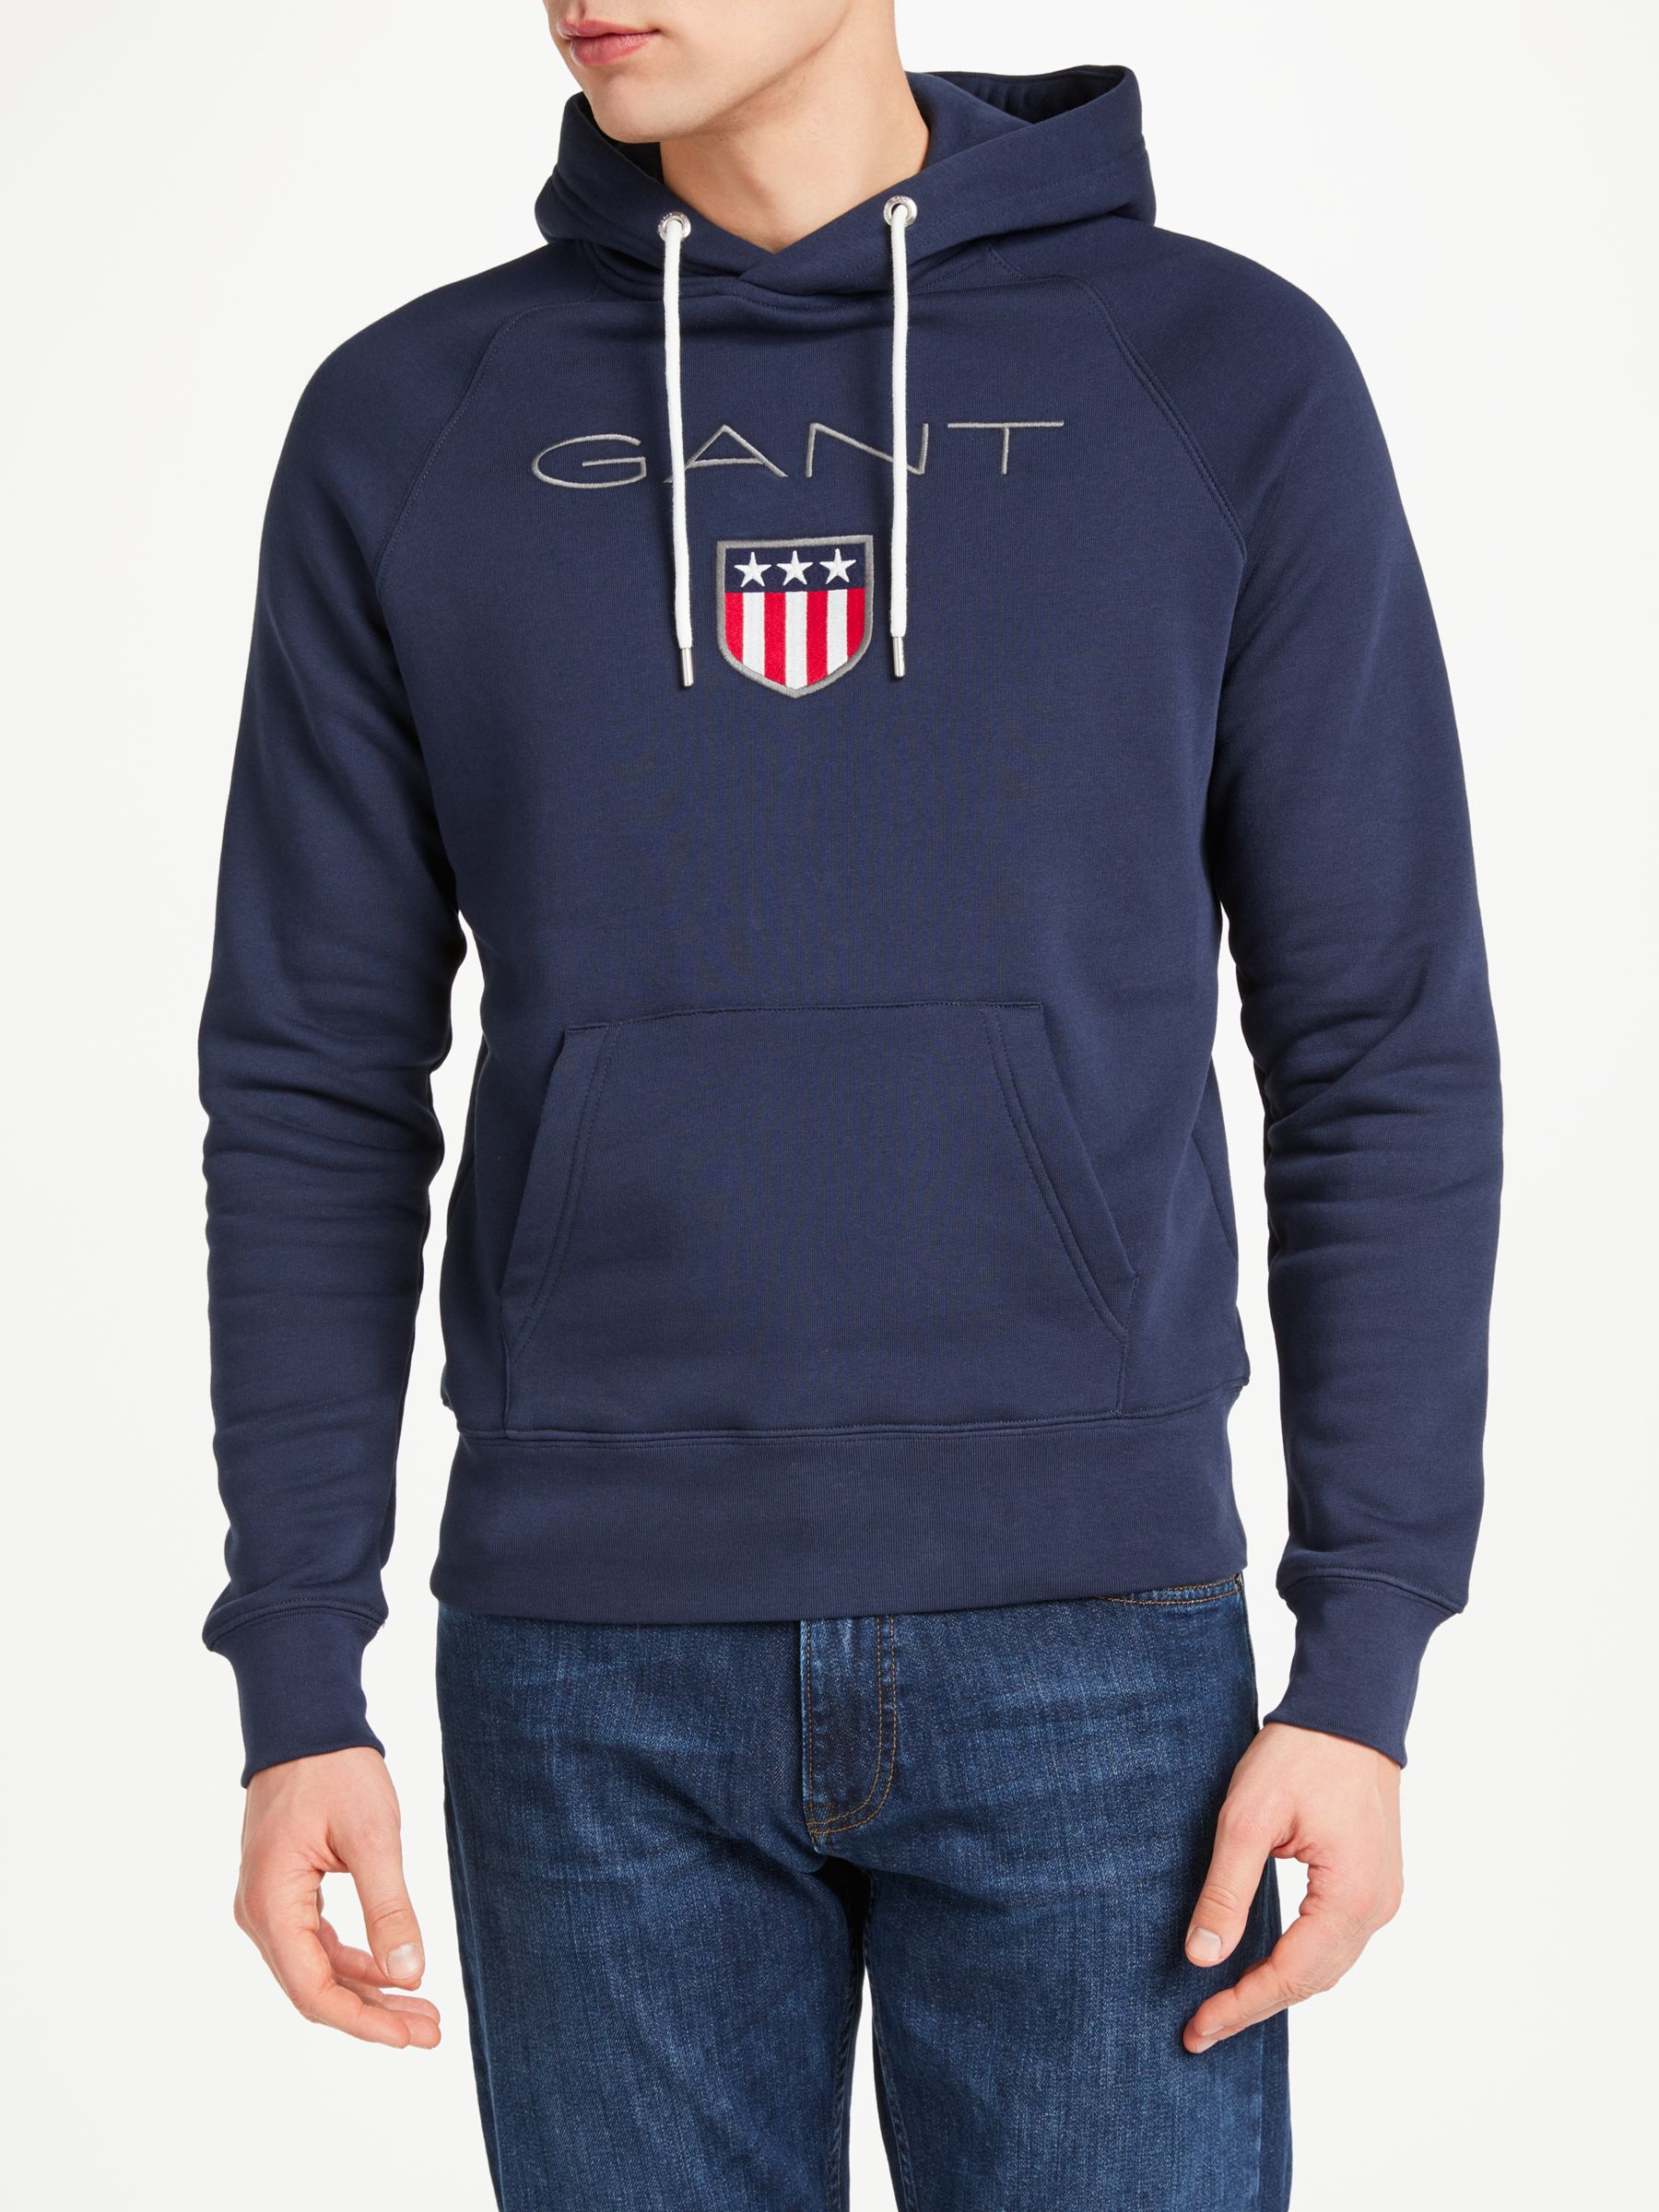 GANT Shield Embroidered Pullover Sweatshirt, Navy, XXL